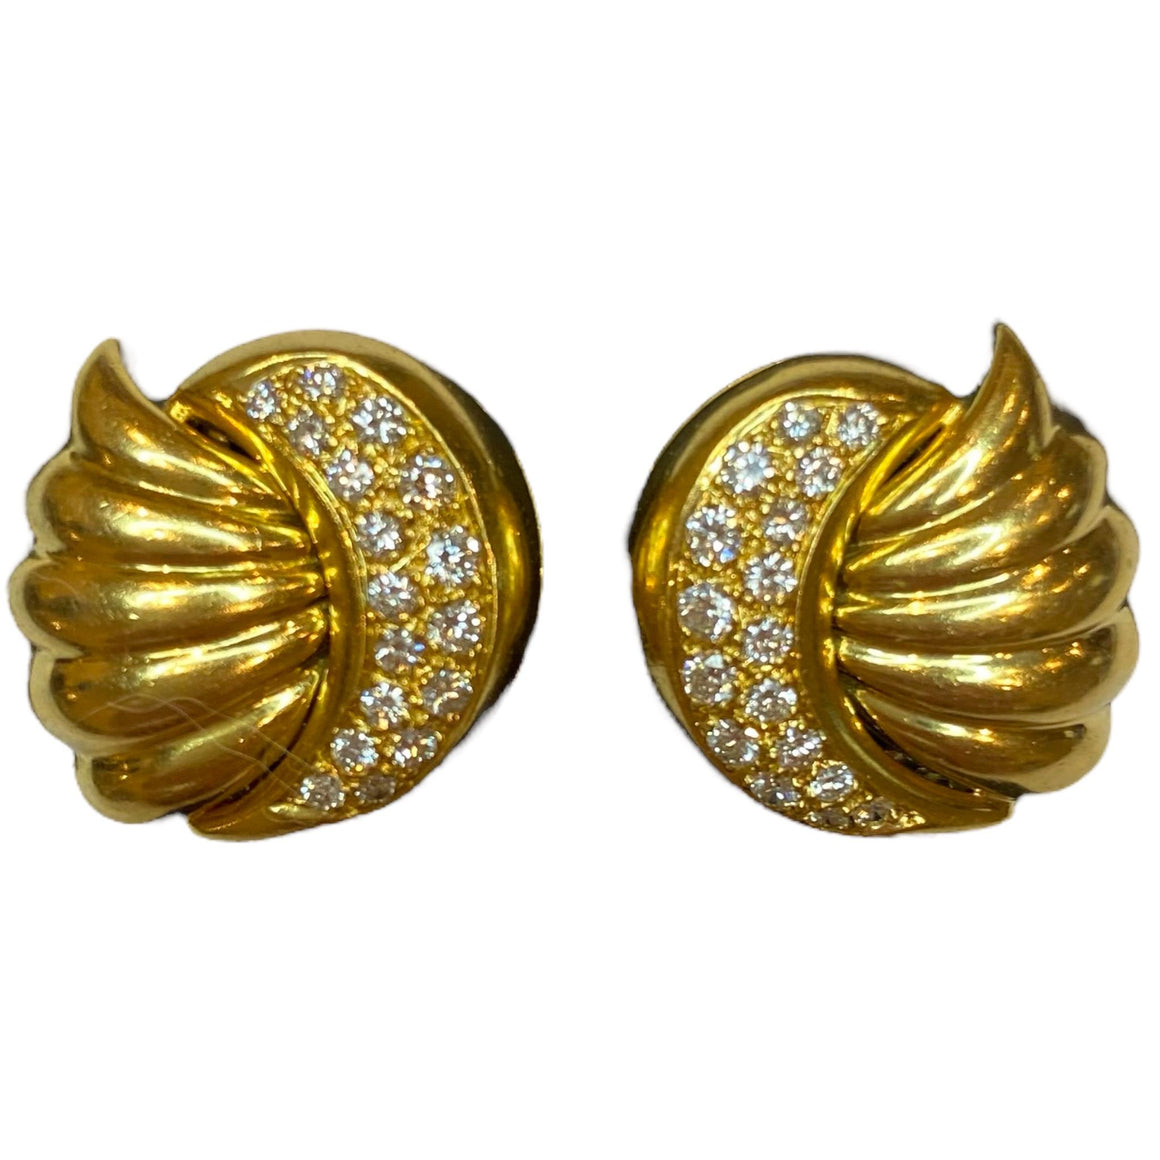 Vintage 18K Gold Scalloped Diamond Earrings